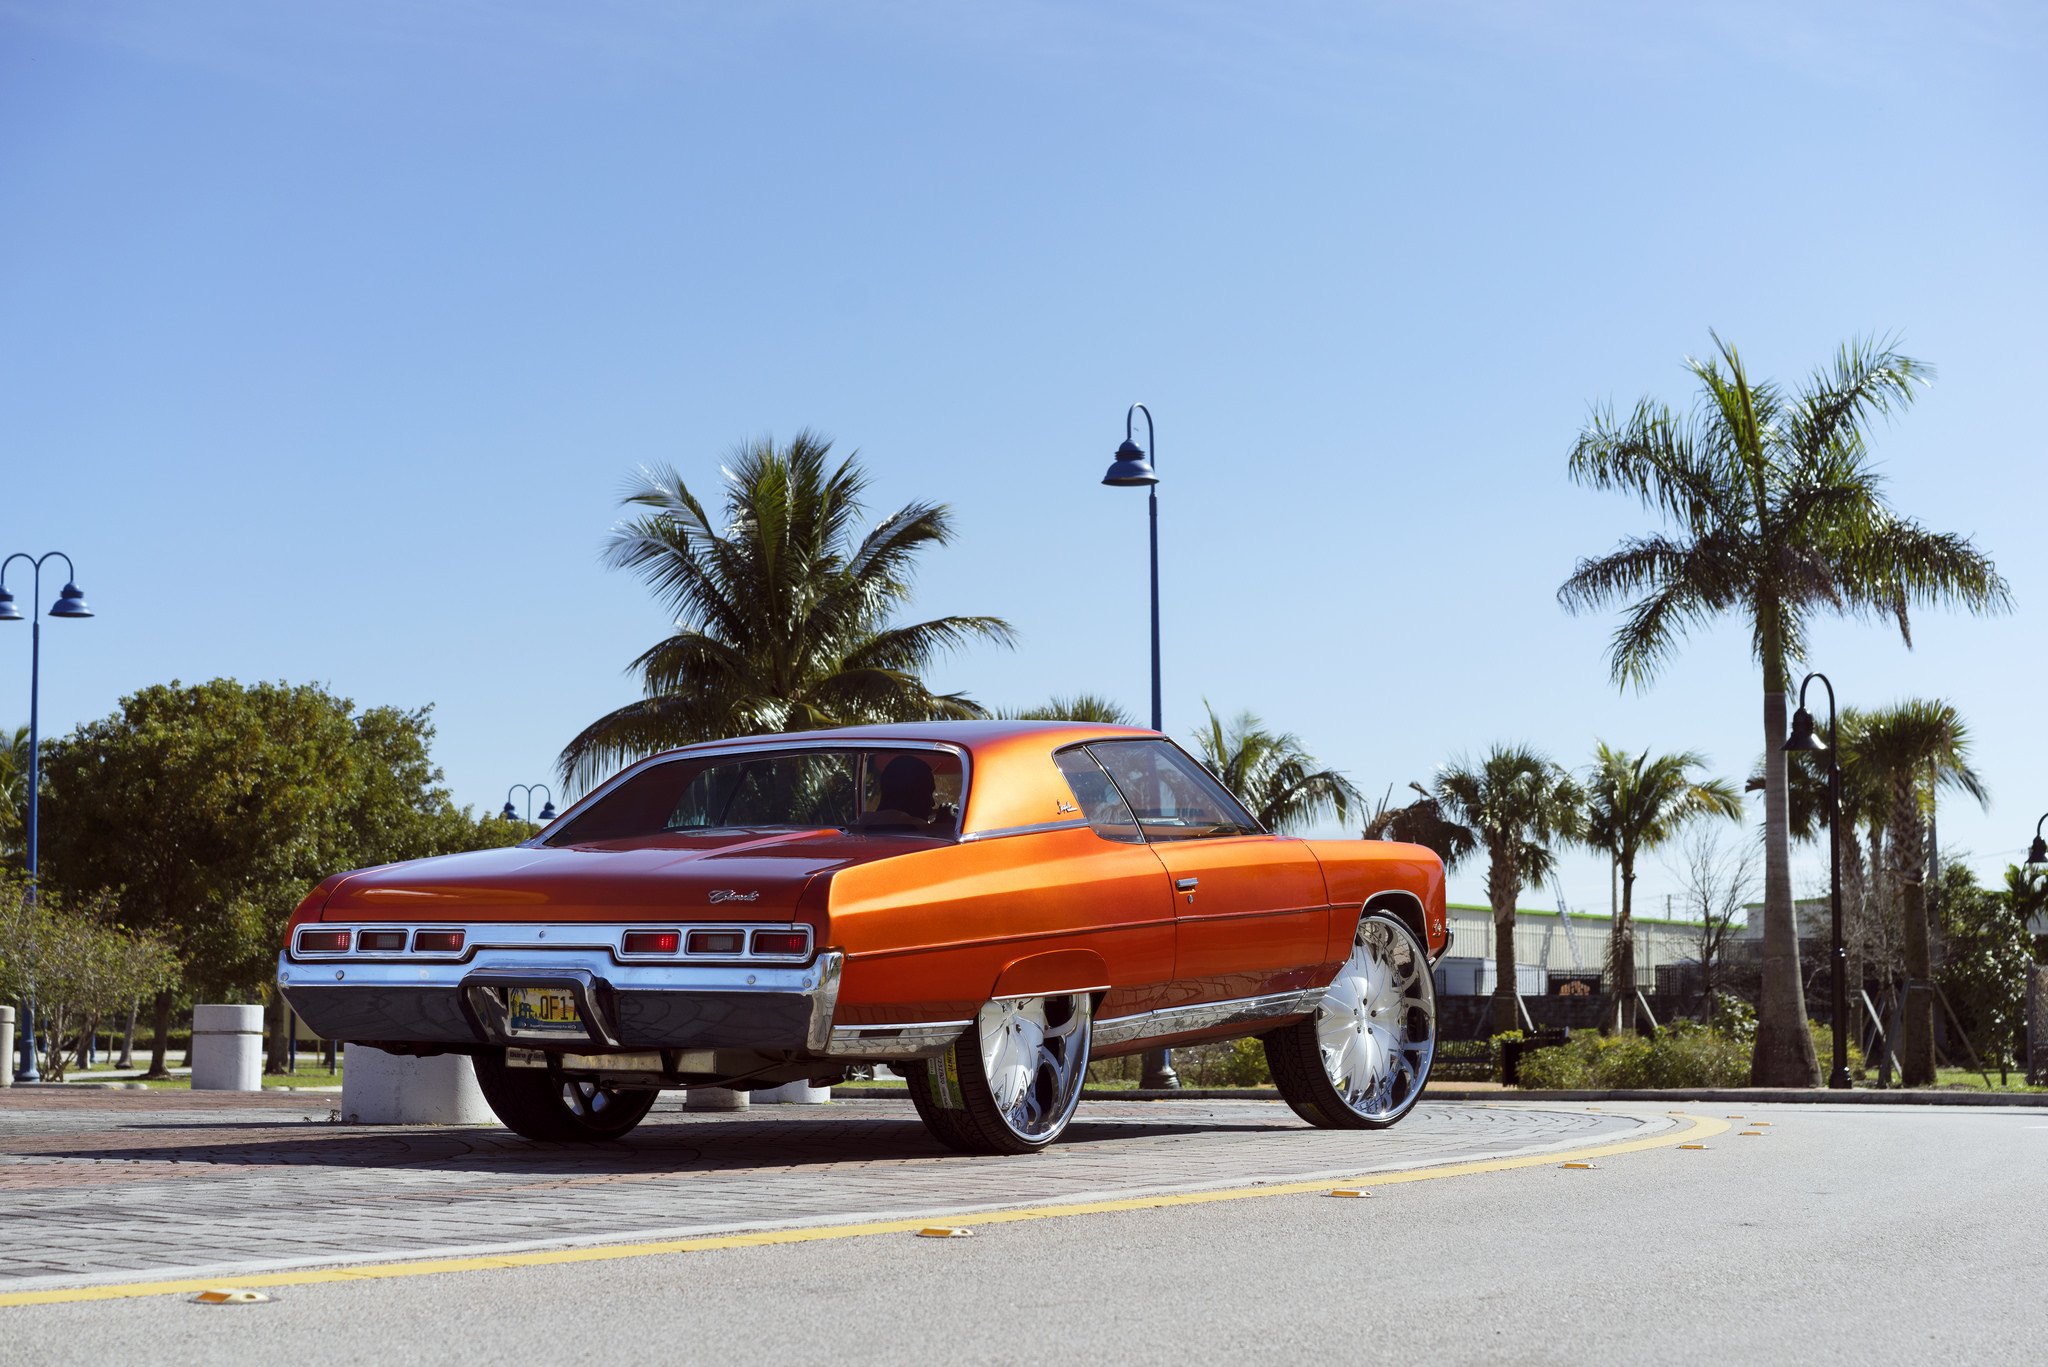 30 Inch XB7 DUB Wheels on Orange Chevy Impala - Photo by DUB